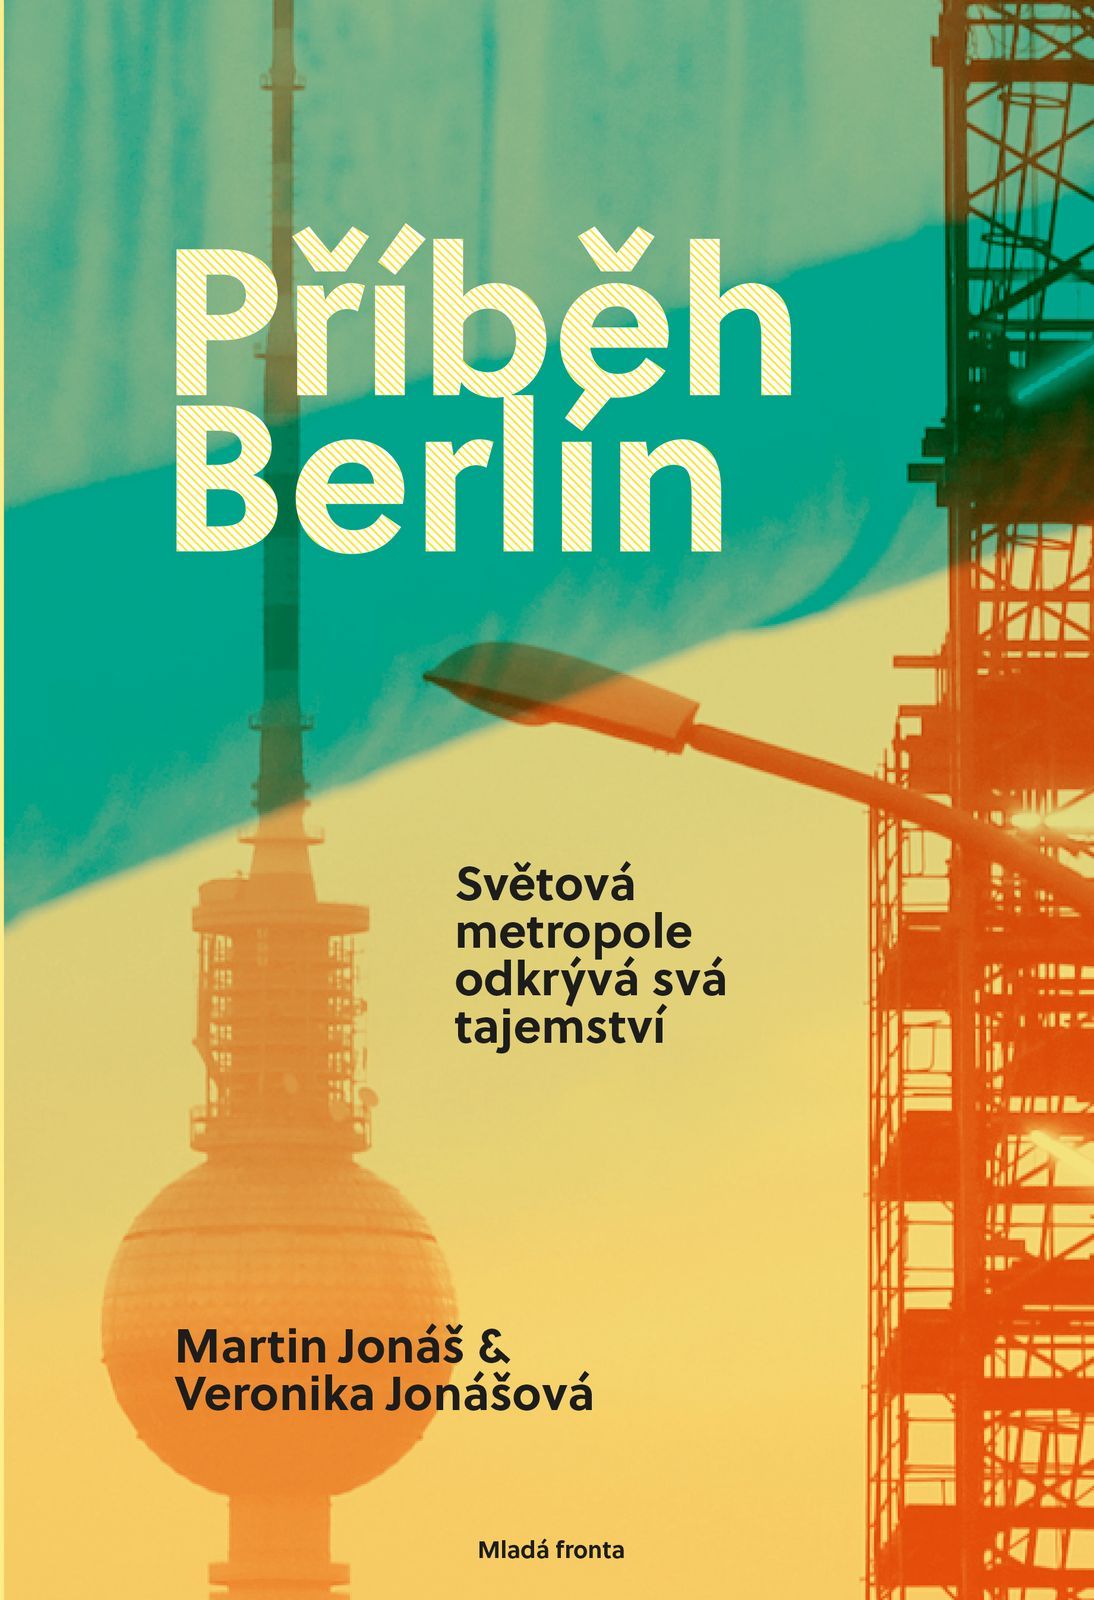 Příběh Berlín, kniha, přebal